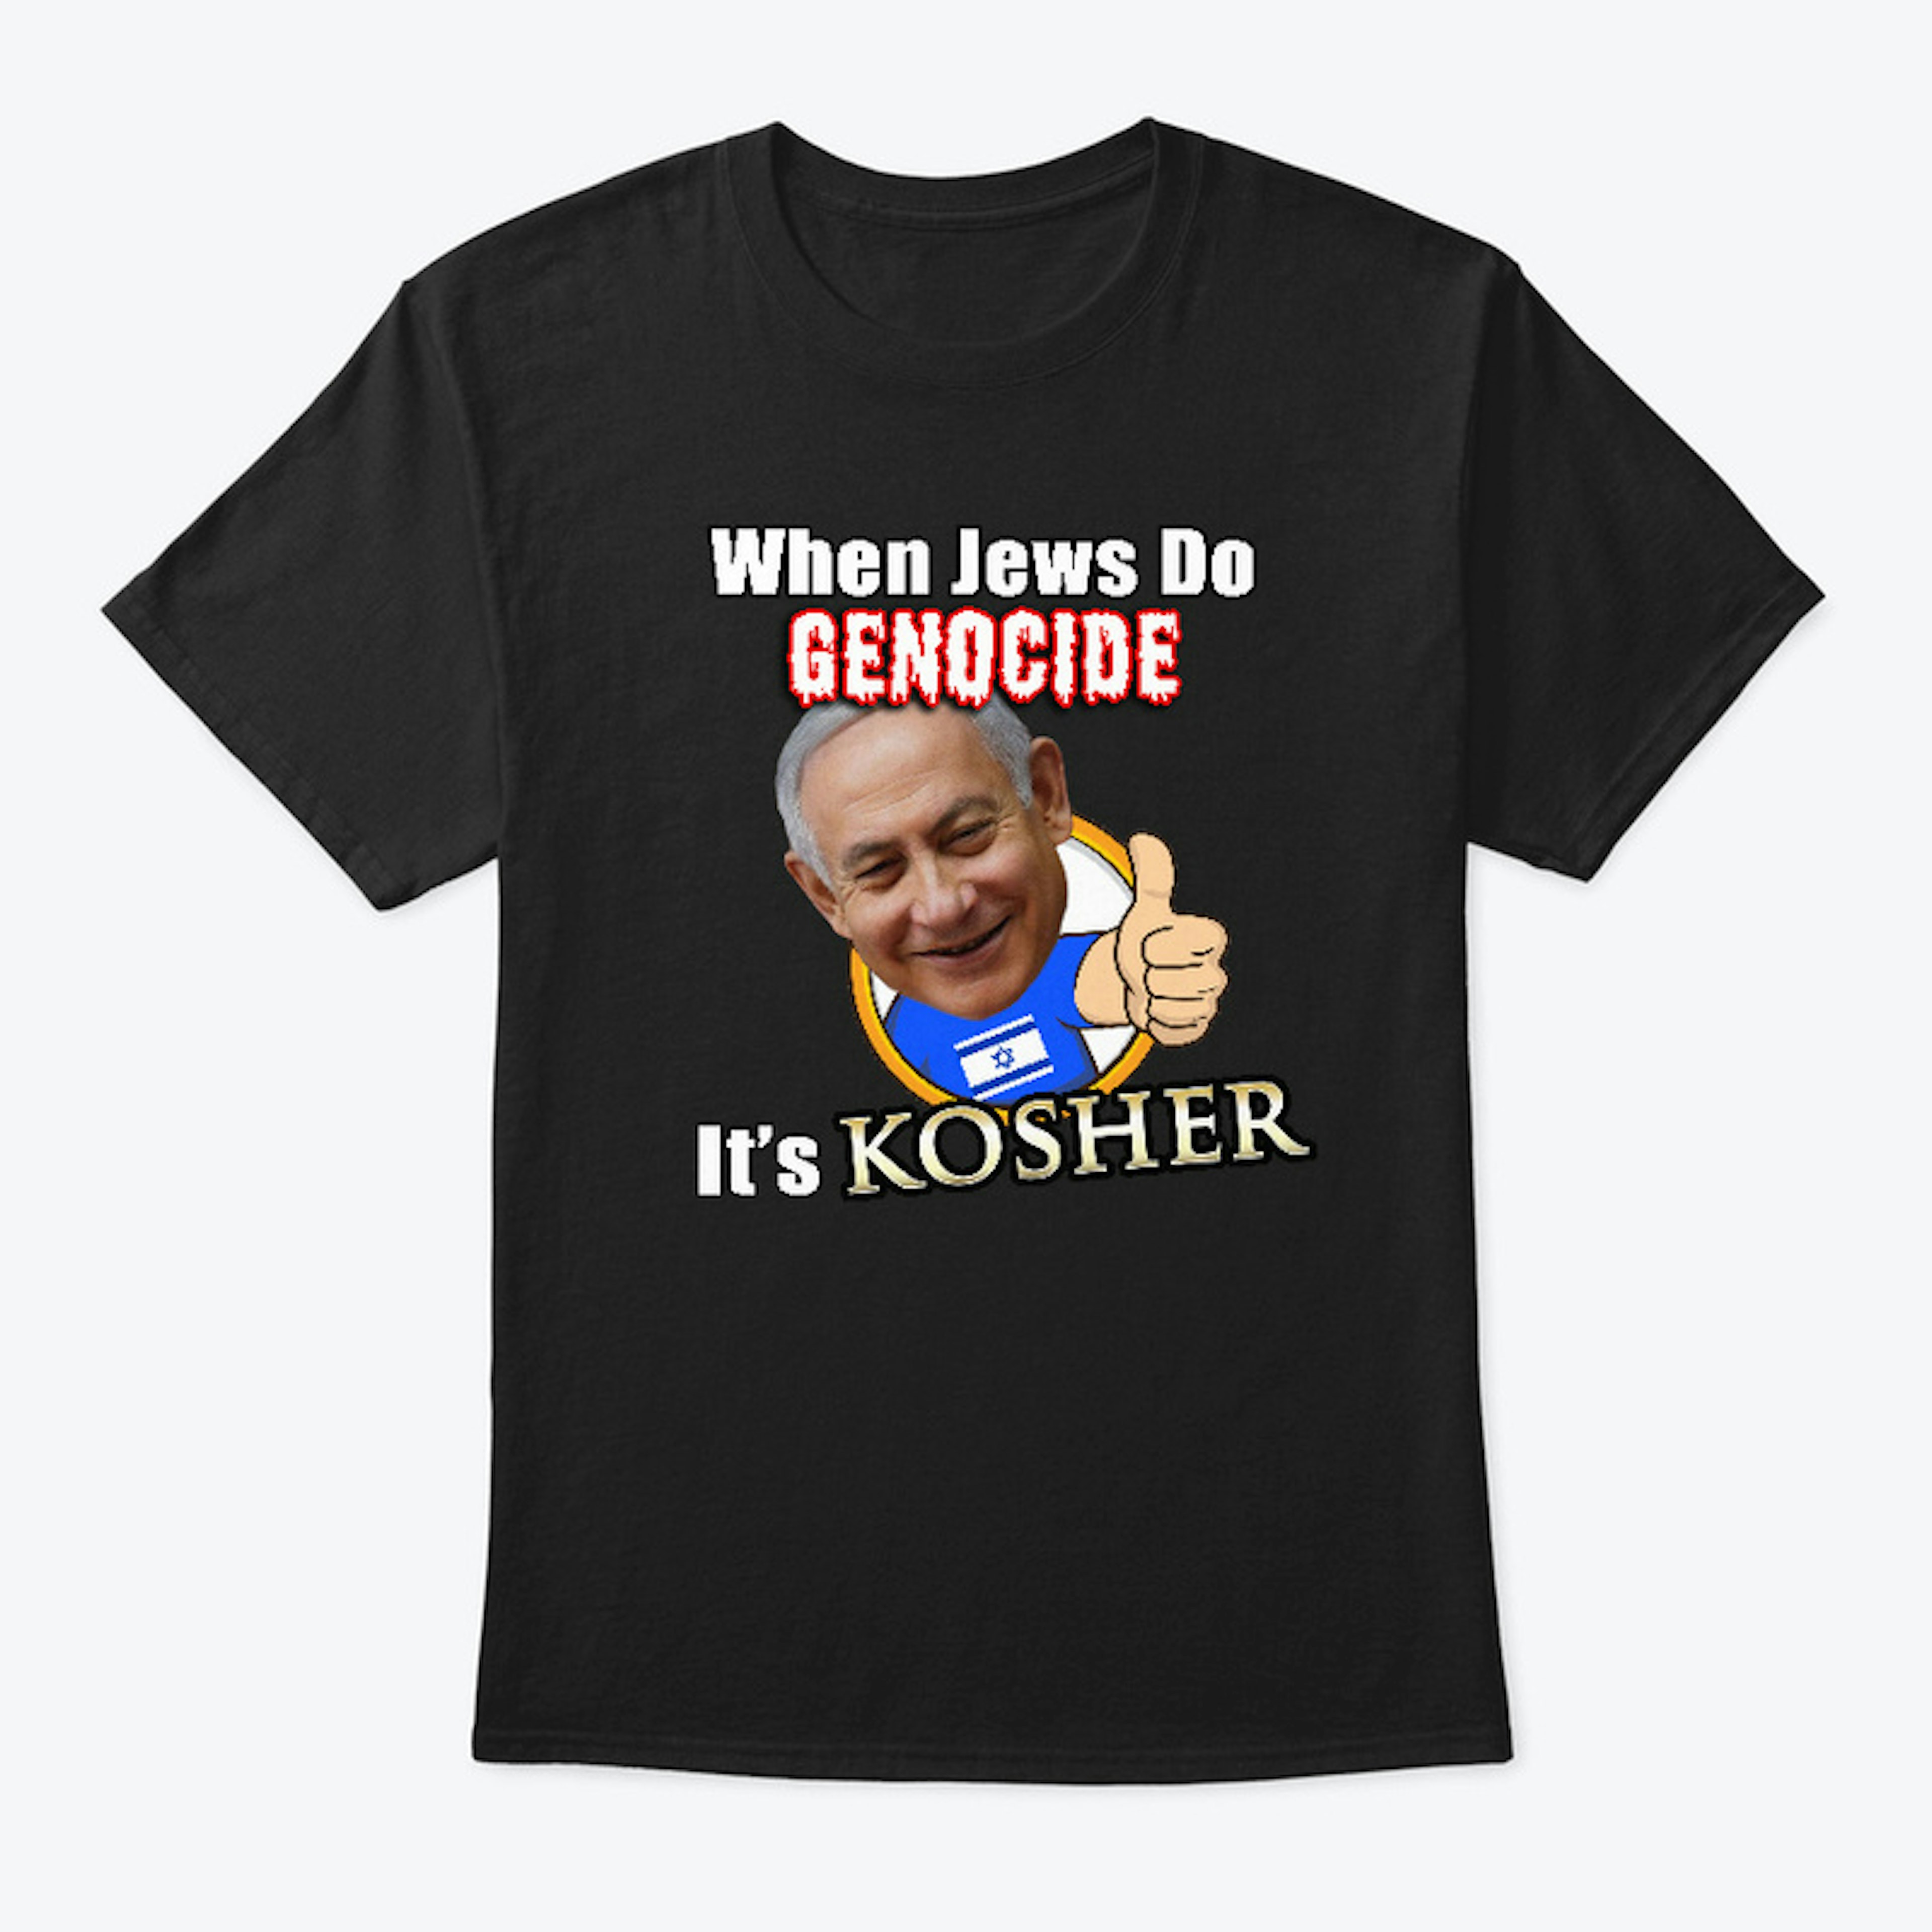 It's Kosher